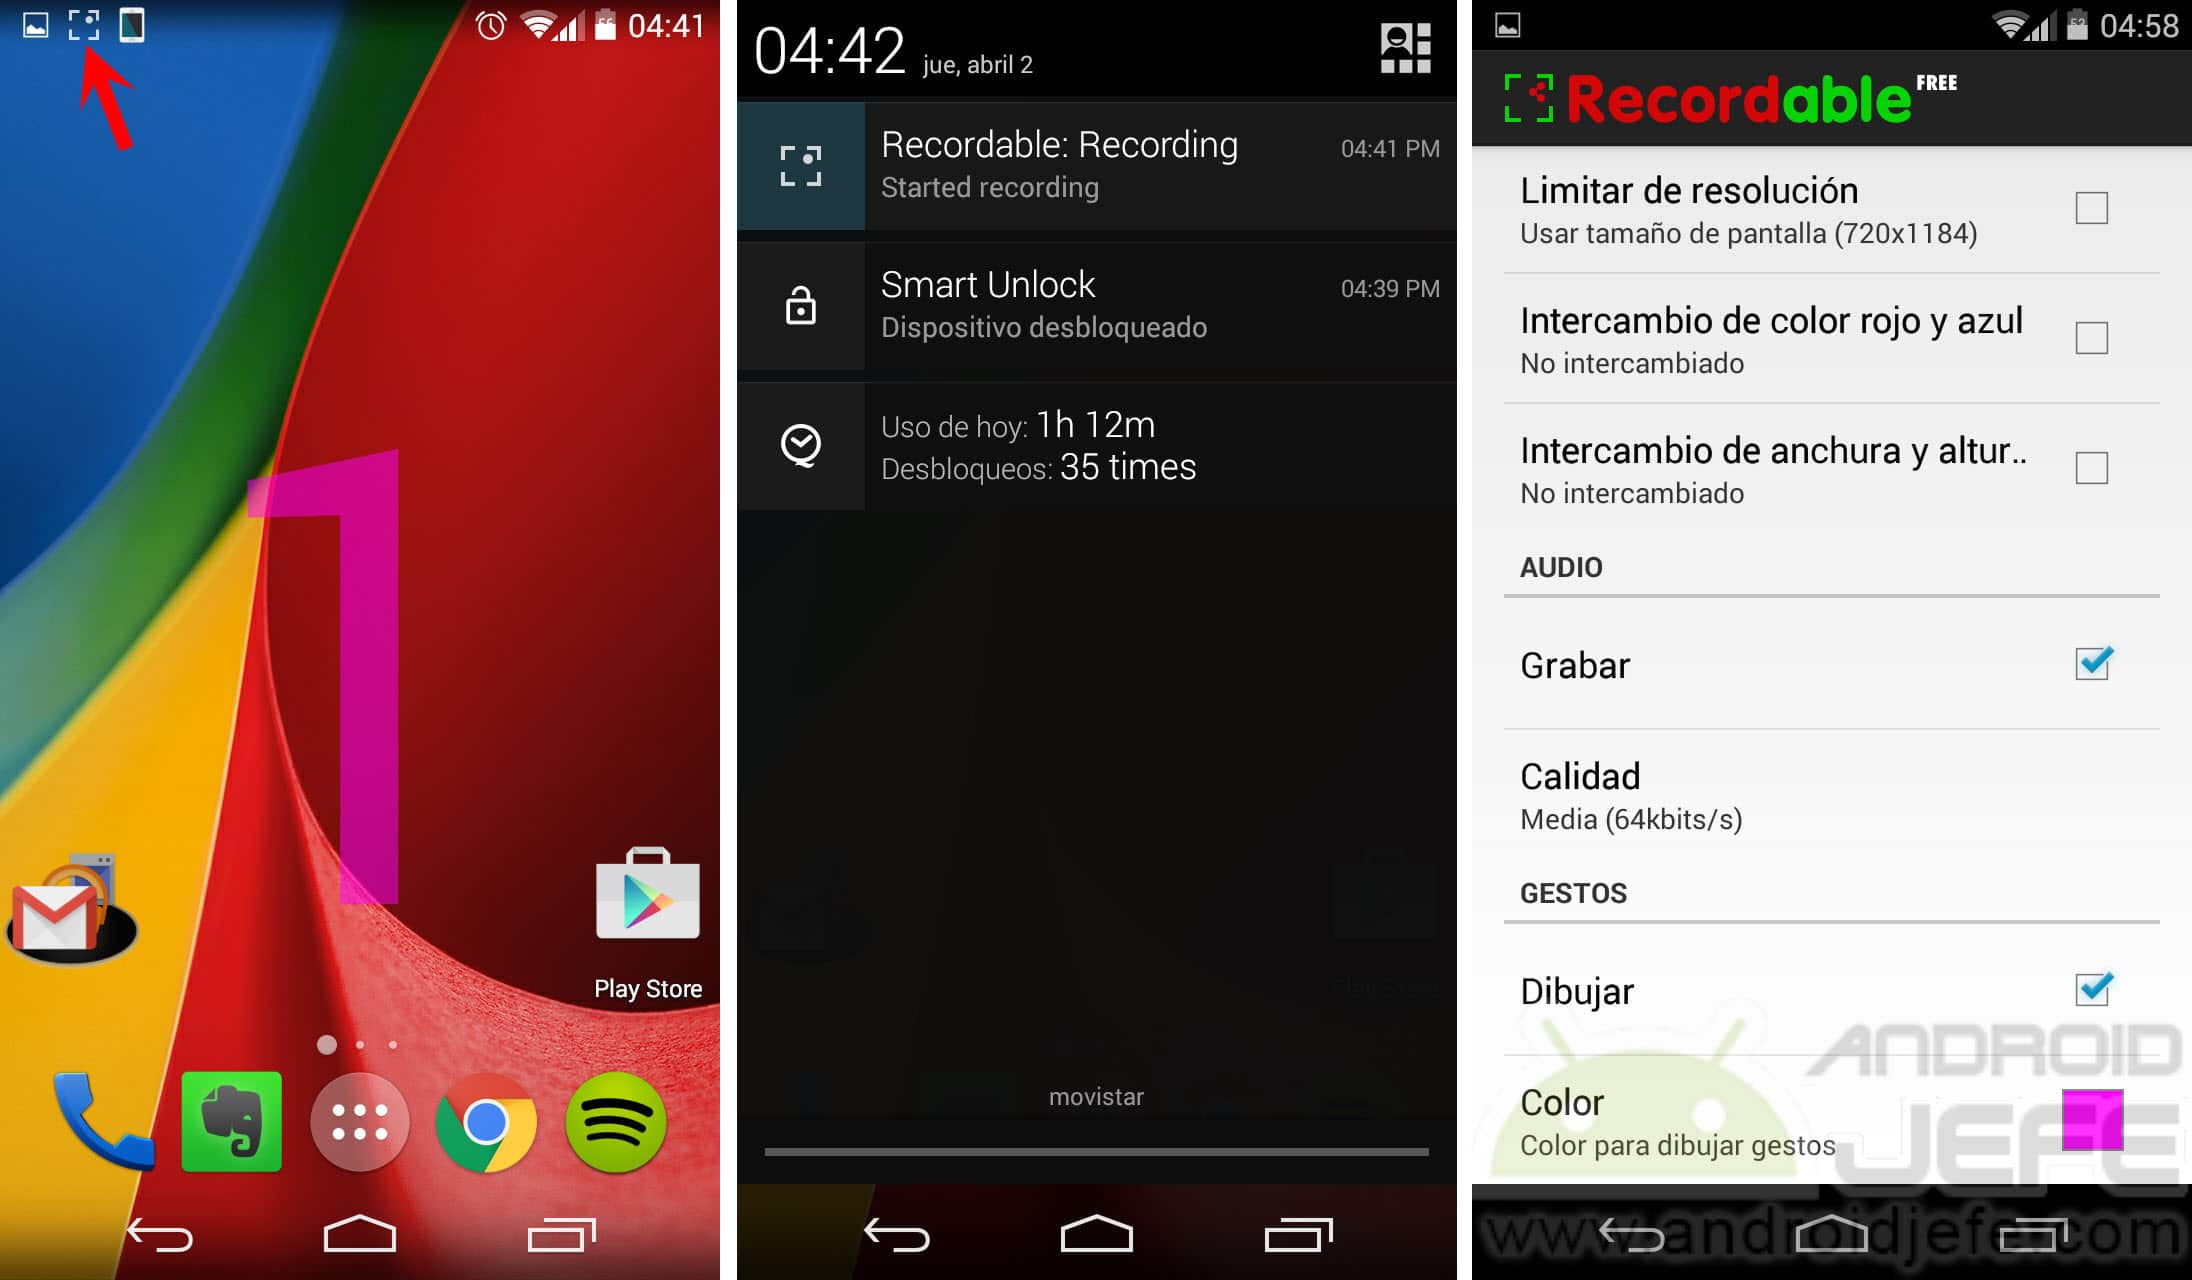 Recordable permite grabar la pantalla en celulares antiguos (Android 2.3+) con audio y SIN root